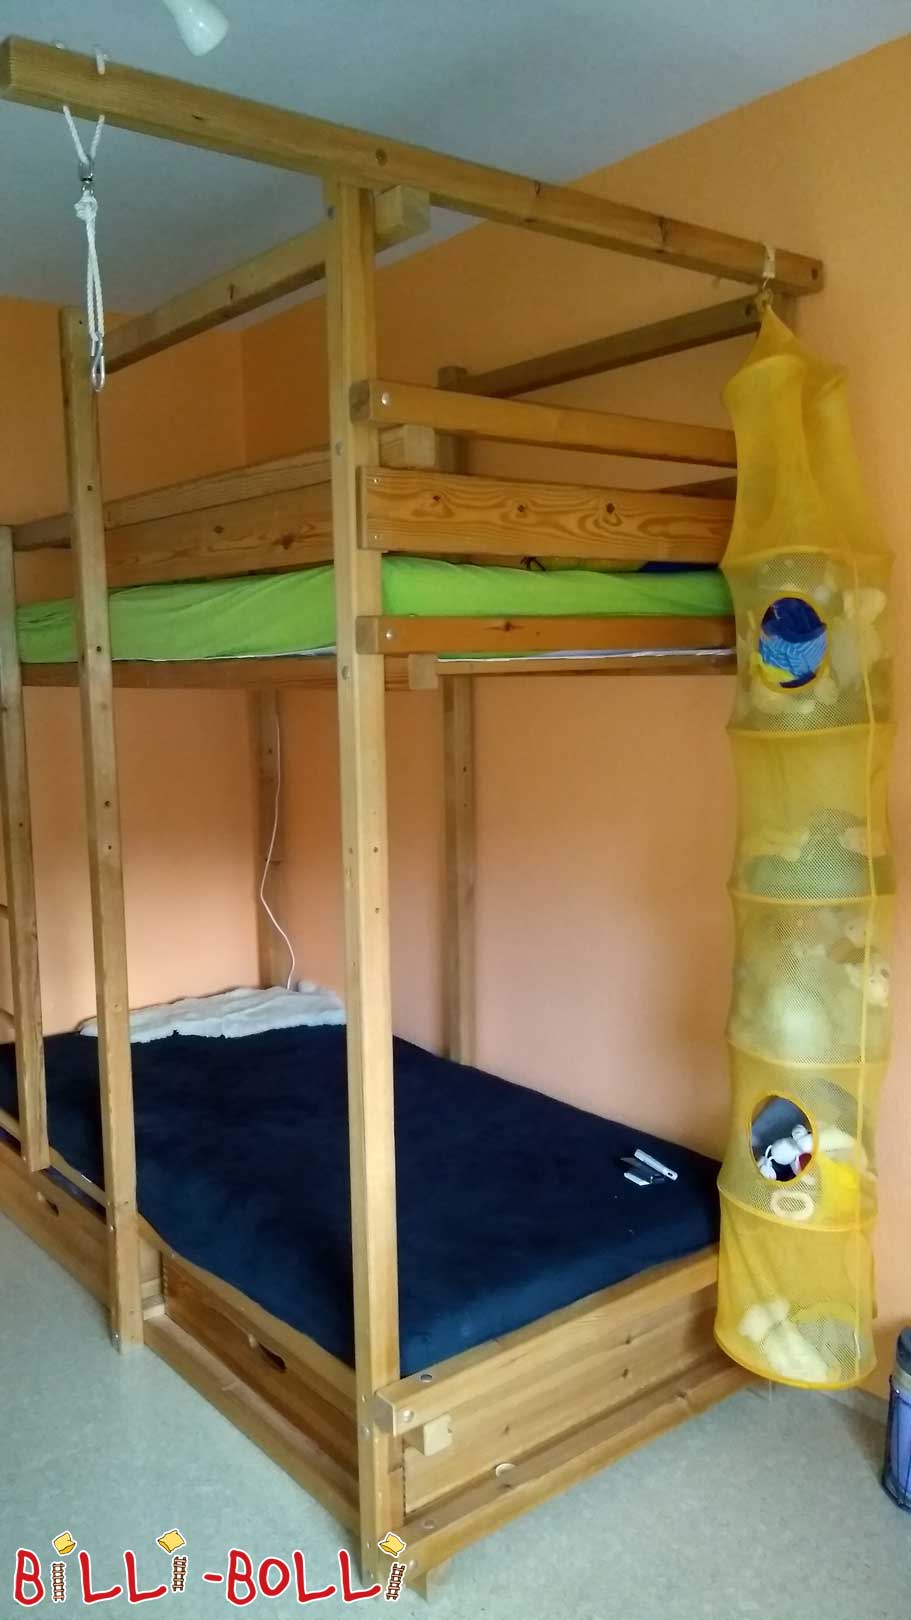 Gullibo säng, 90 x 200 cm (Kategori: Barnmöbler används)